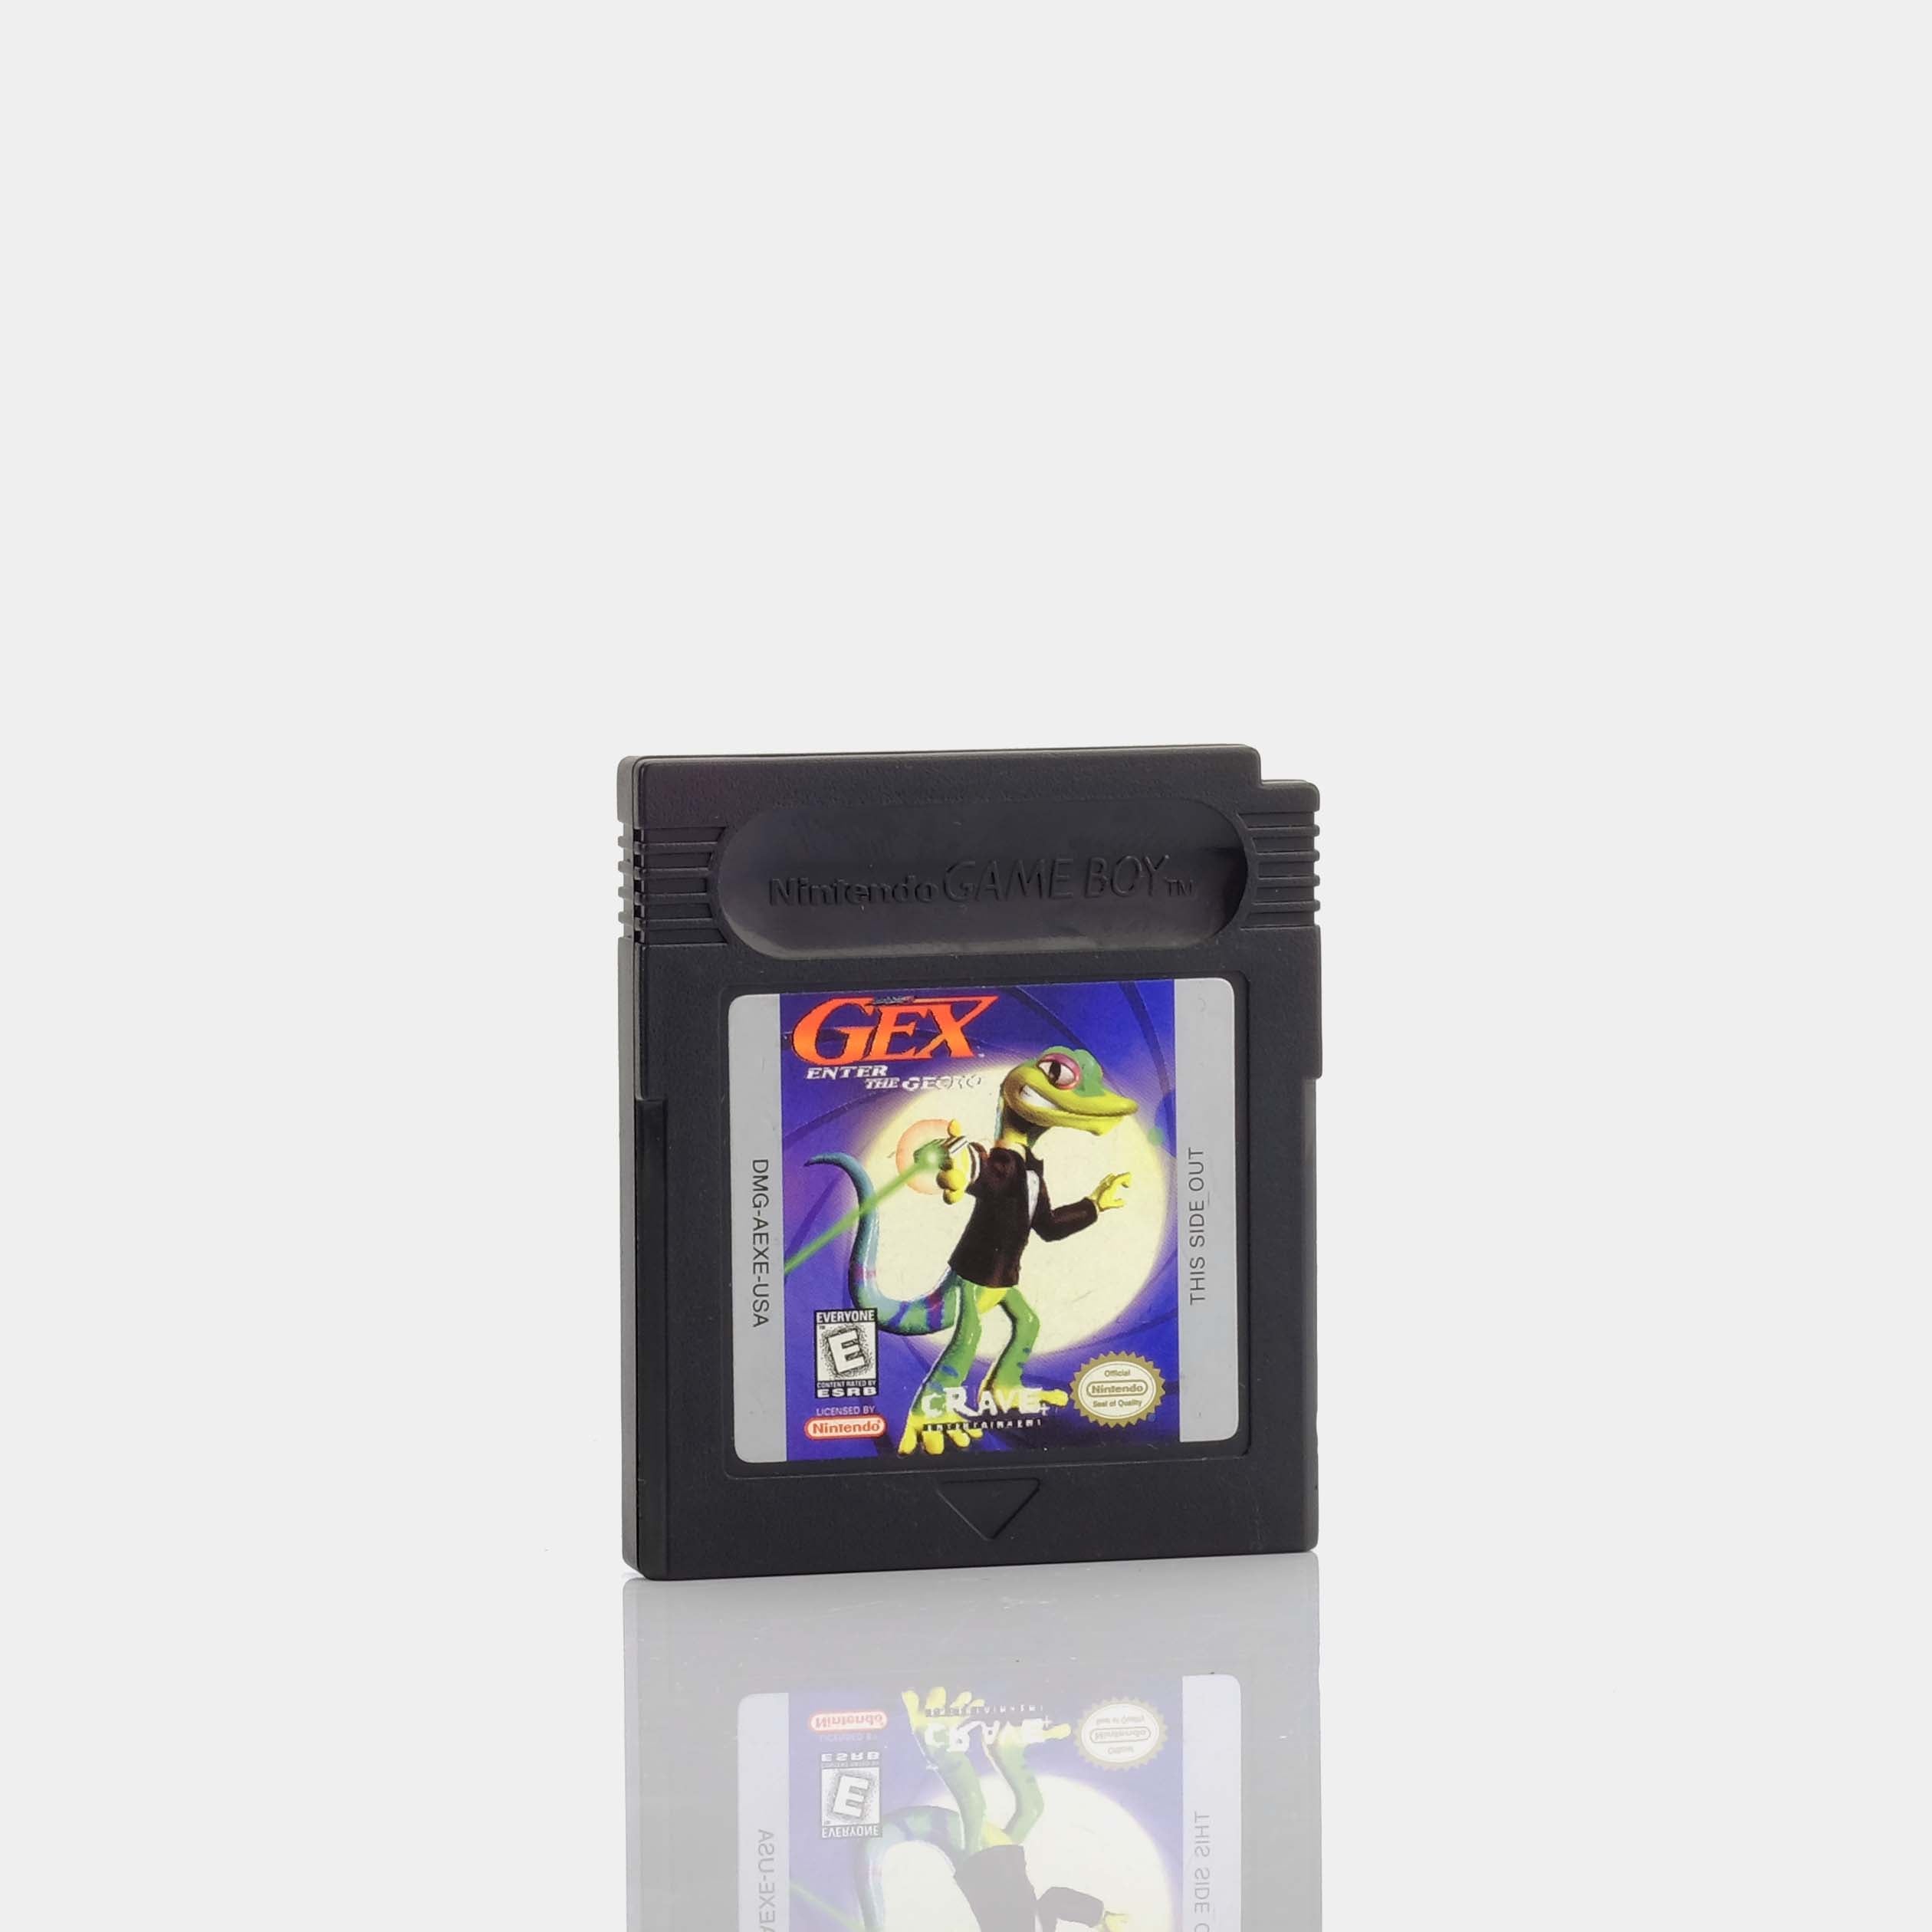 GEX: Enter The Gecko (1998) Game Boy Game